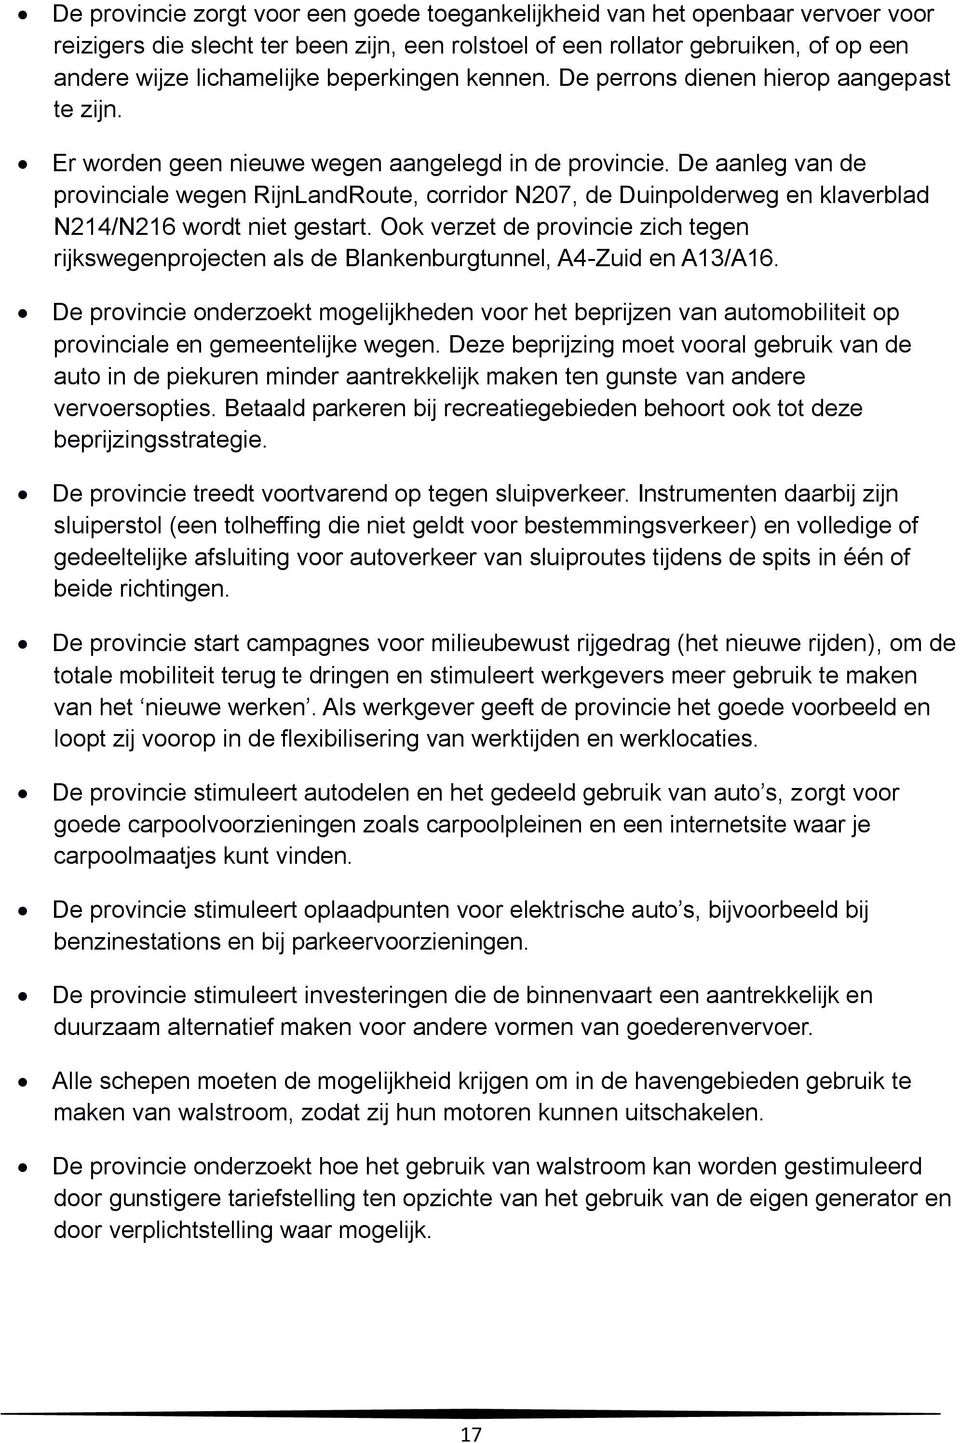 De aanleg van de provinciale wegen RijnLandRoute, corridor N207, de Duinpolderweg en klaverblad N214/N216 wordt niet gestart.